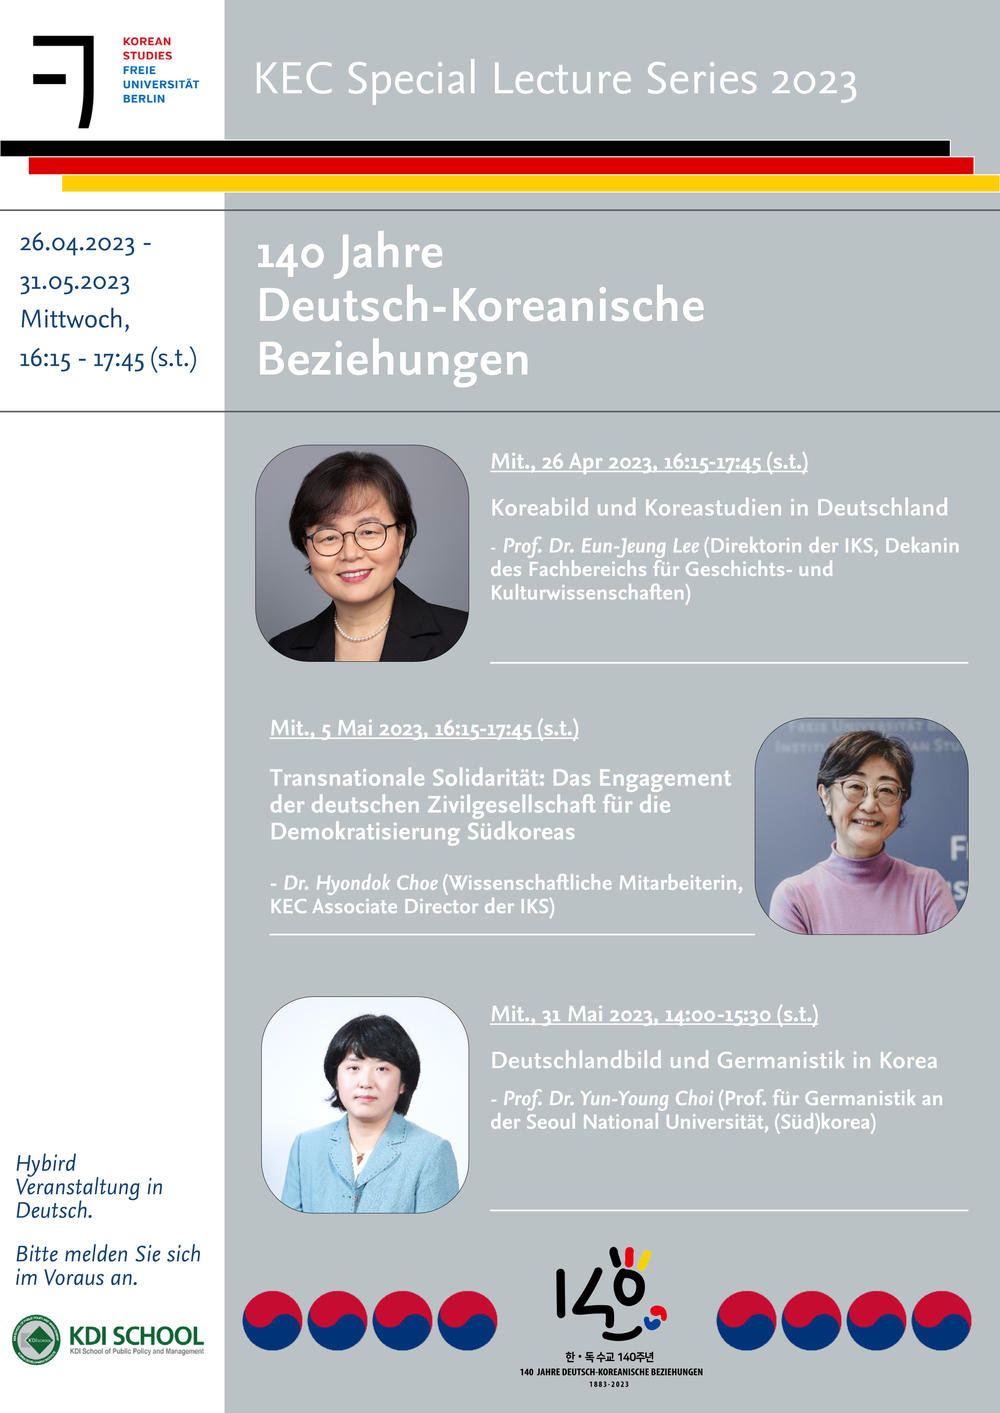 KEC Special Lecture Series - 140 Jahre Deutsch-Koreanische Beziehung